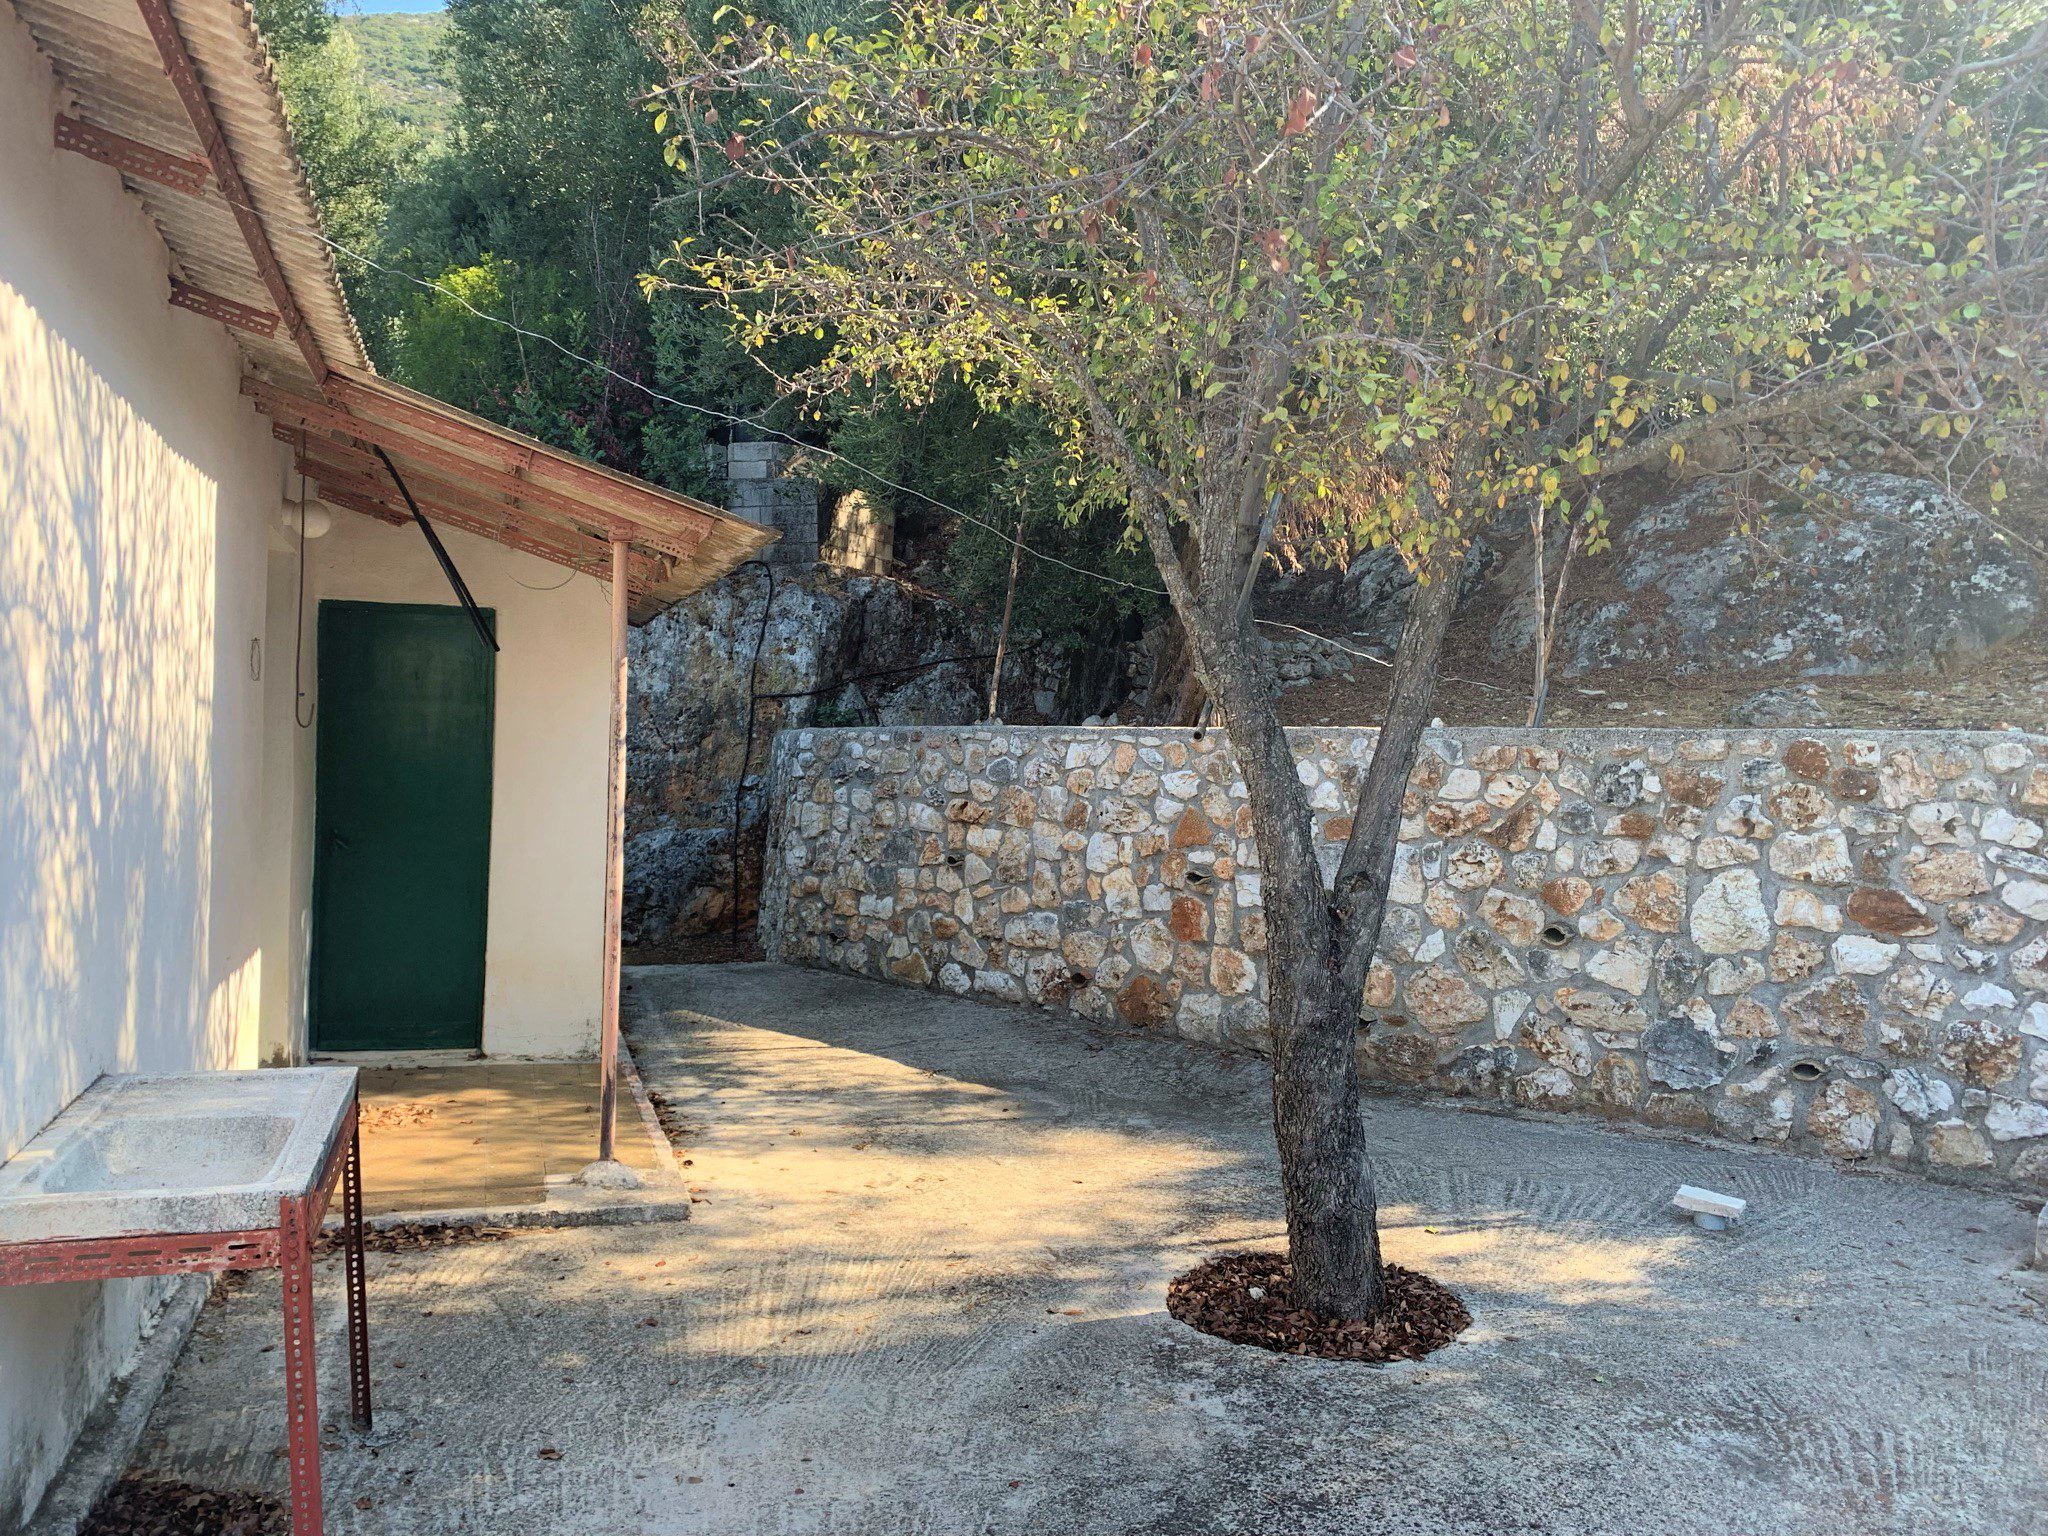 Υπαίθριος χώρος κατοικίας προς πώληση Ιφάκη Ελλάδα, Λευκάκι